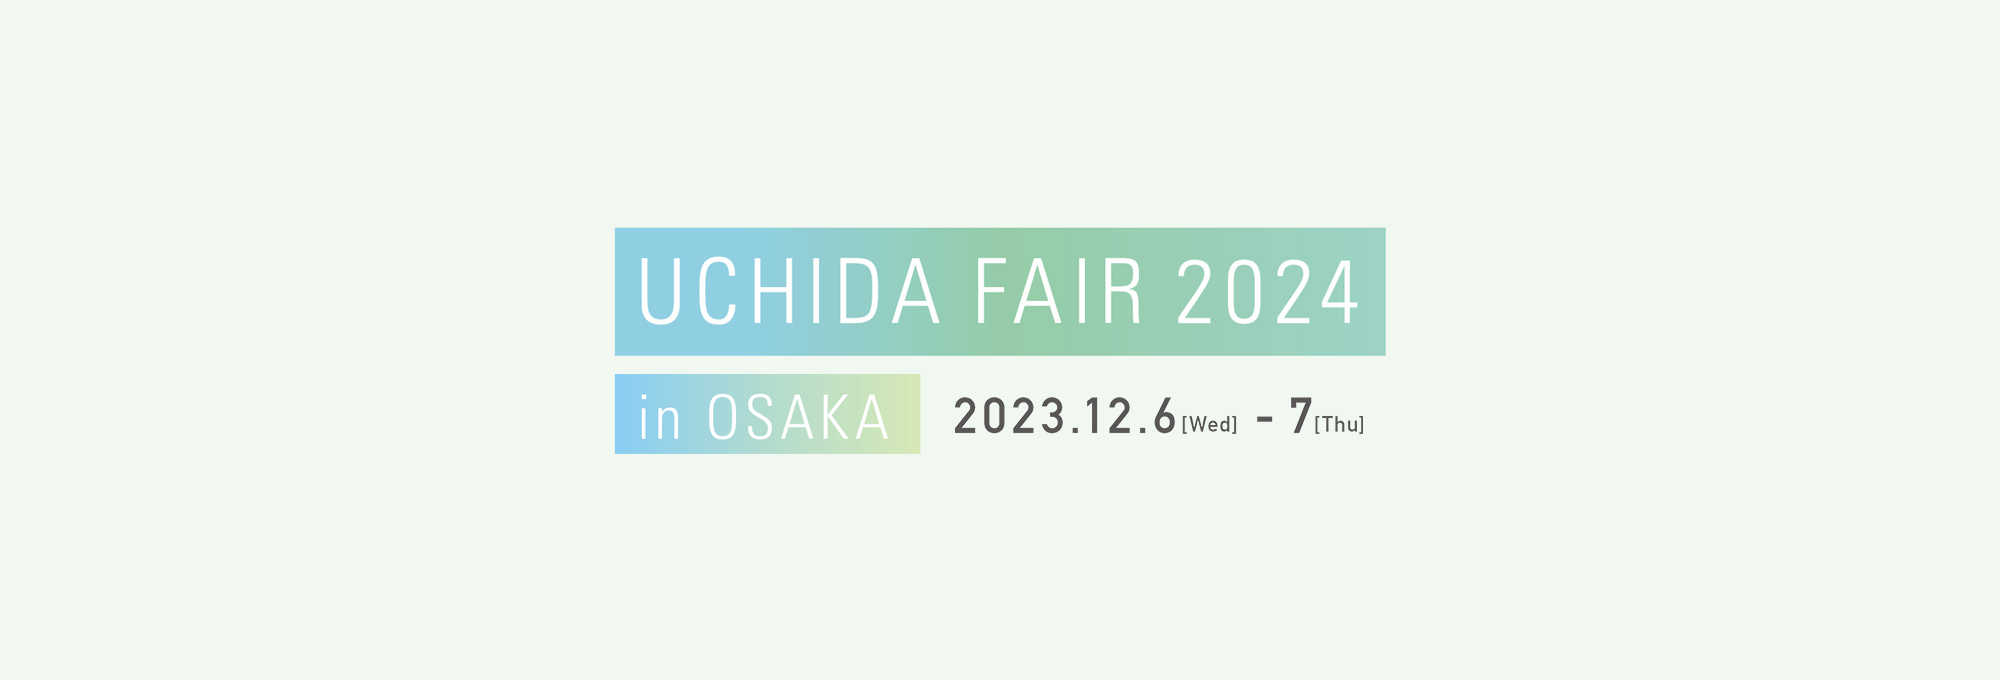 UCHIDA FAIR 2024 in OSAKA 2023.12.6–2023.12.7